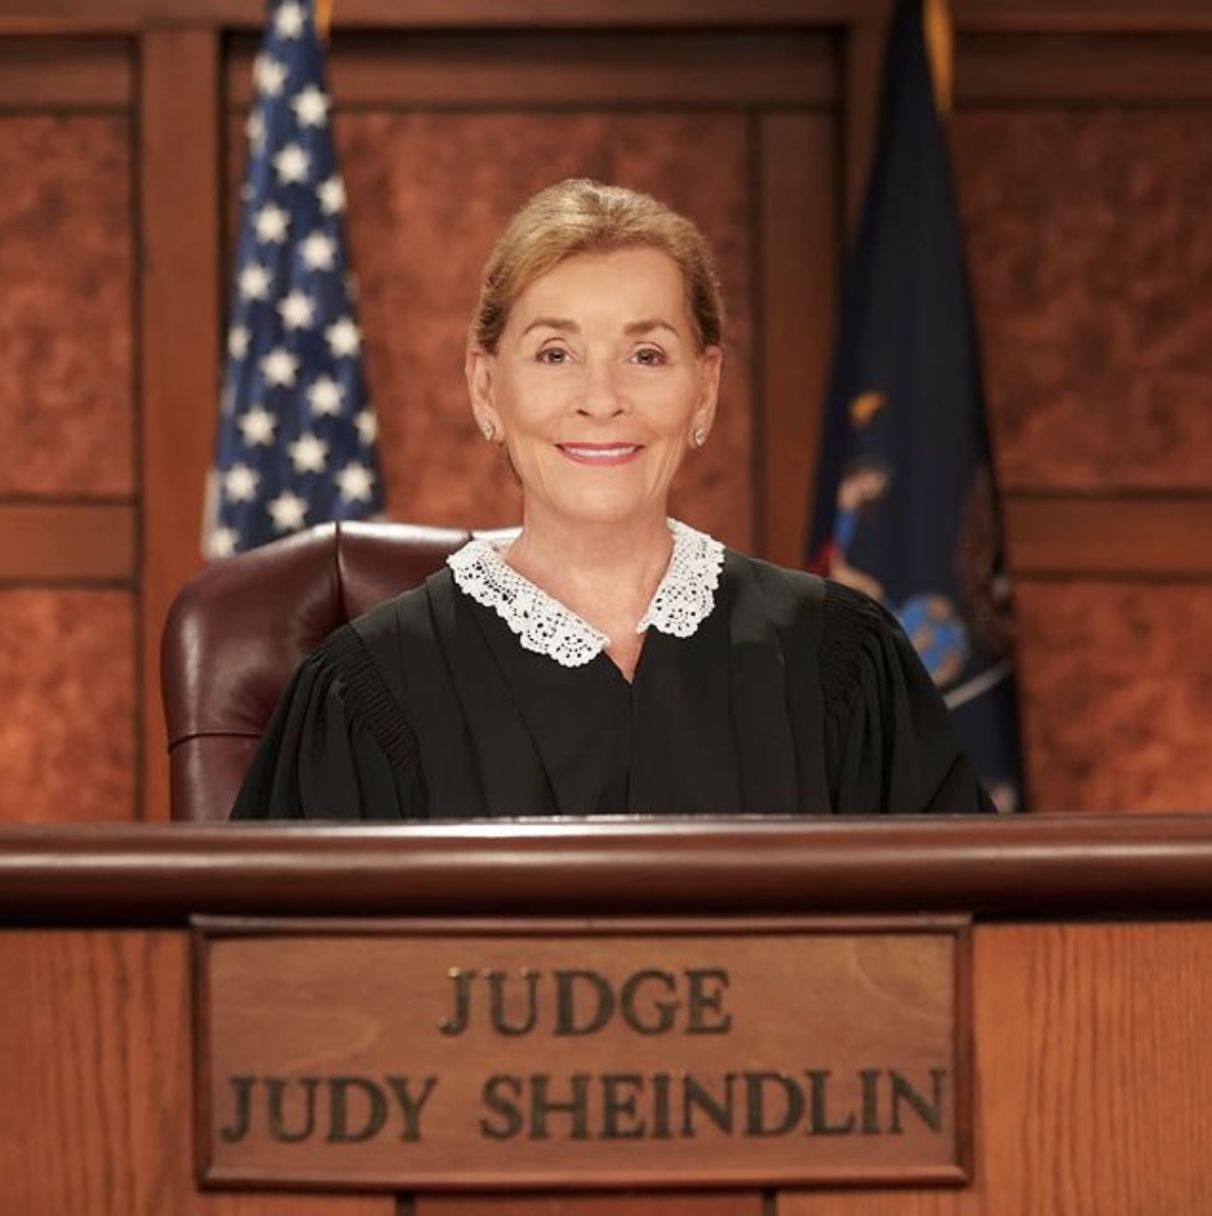 Judy Sheindlin, la jueza de 78 años mejor pagada del mundo